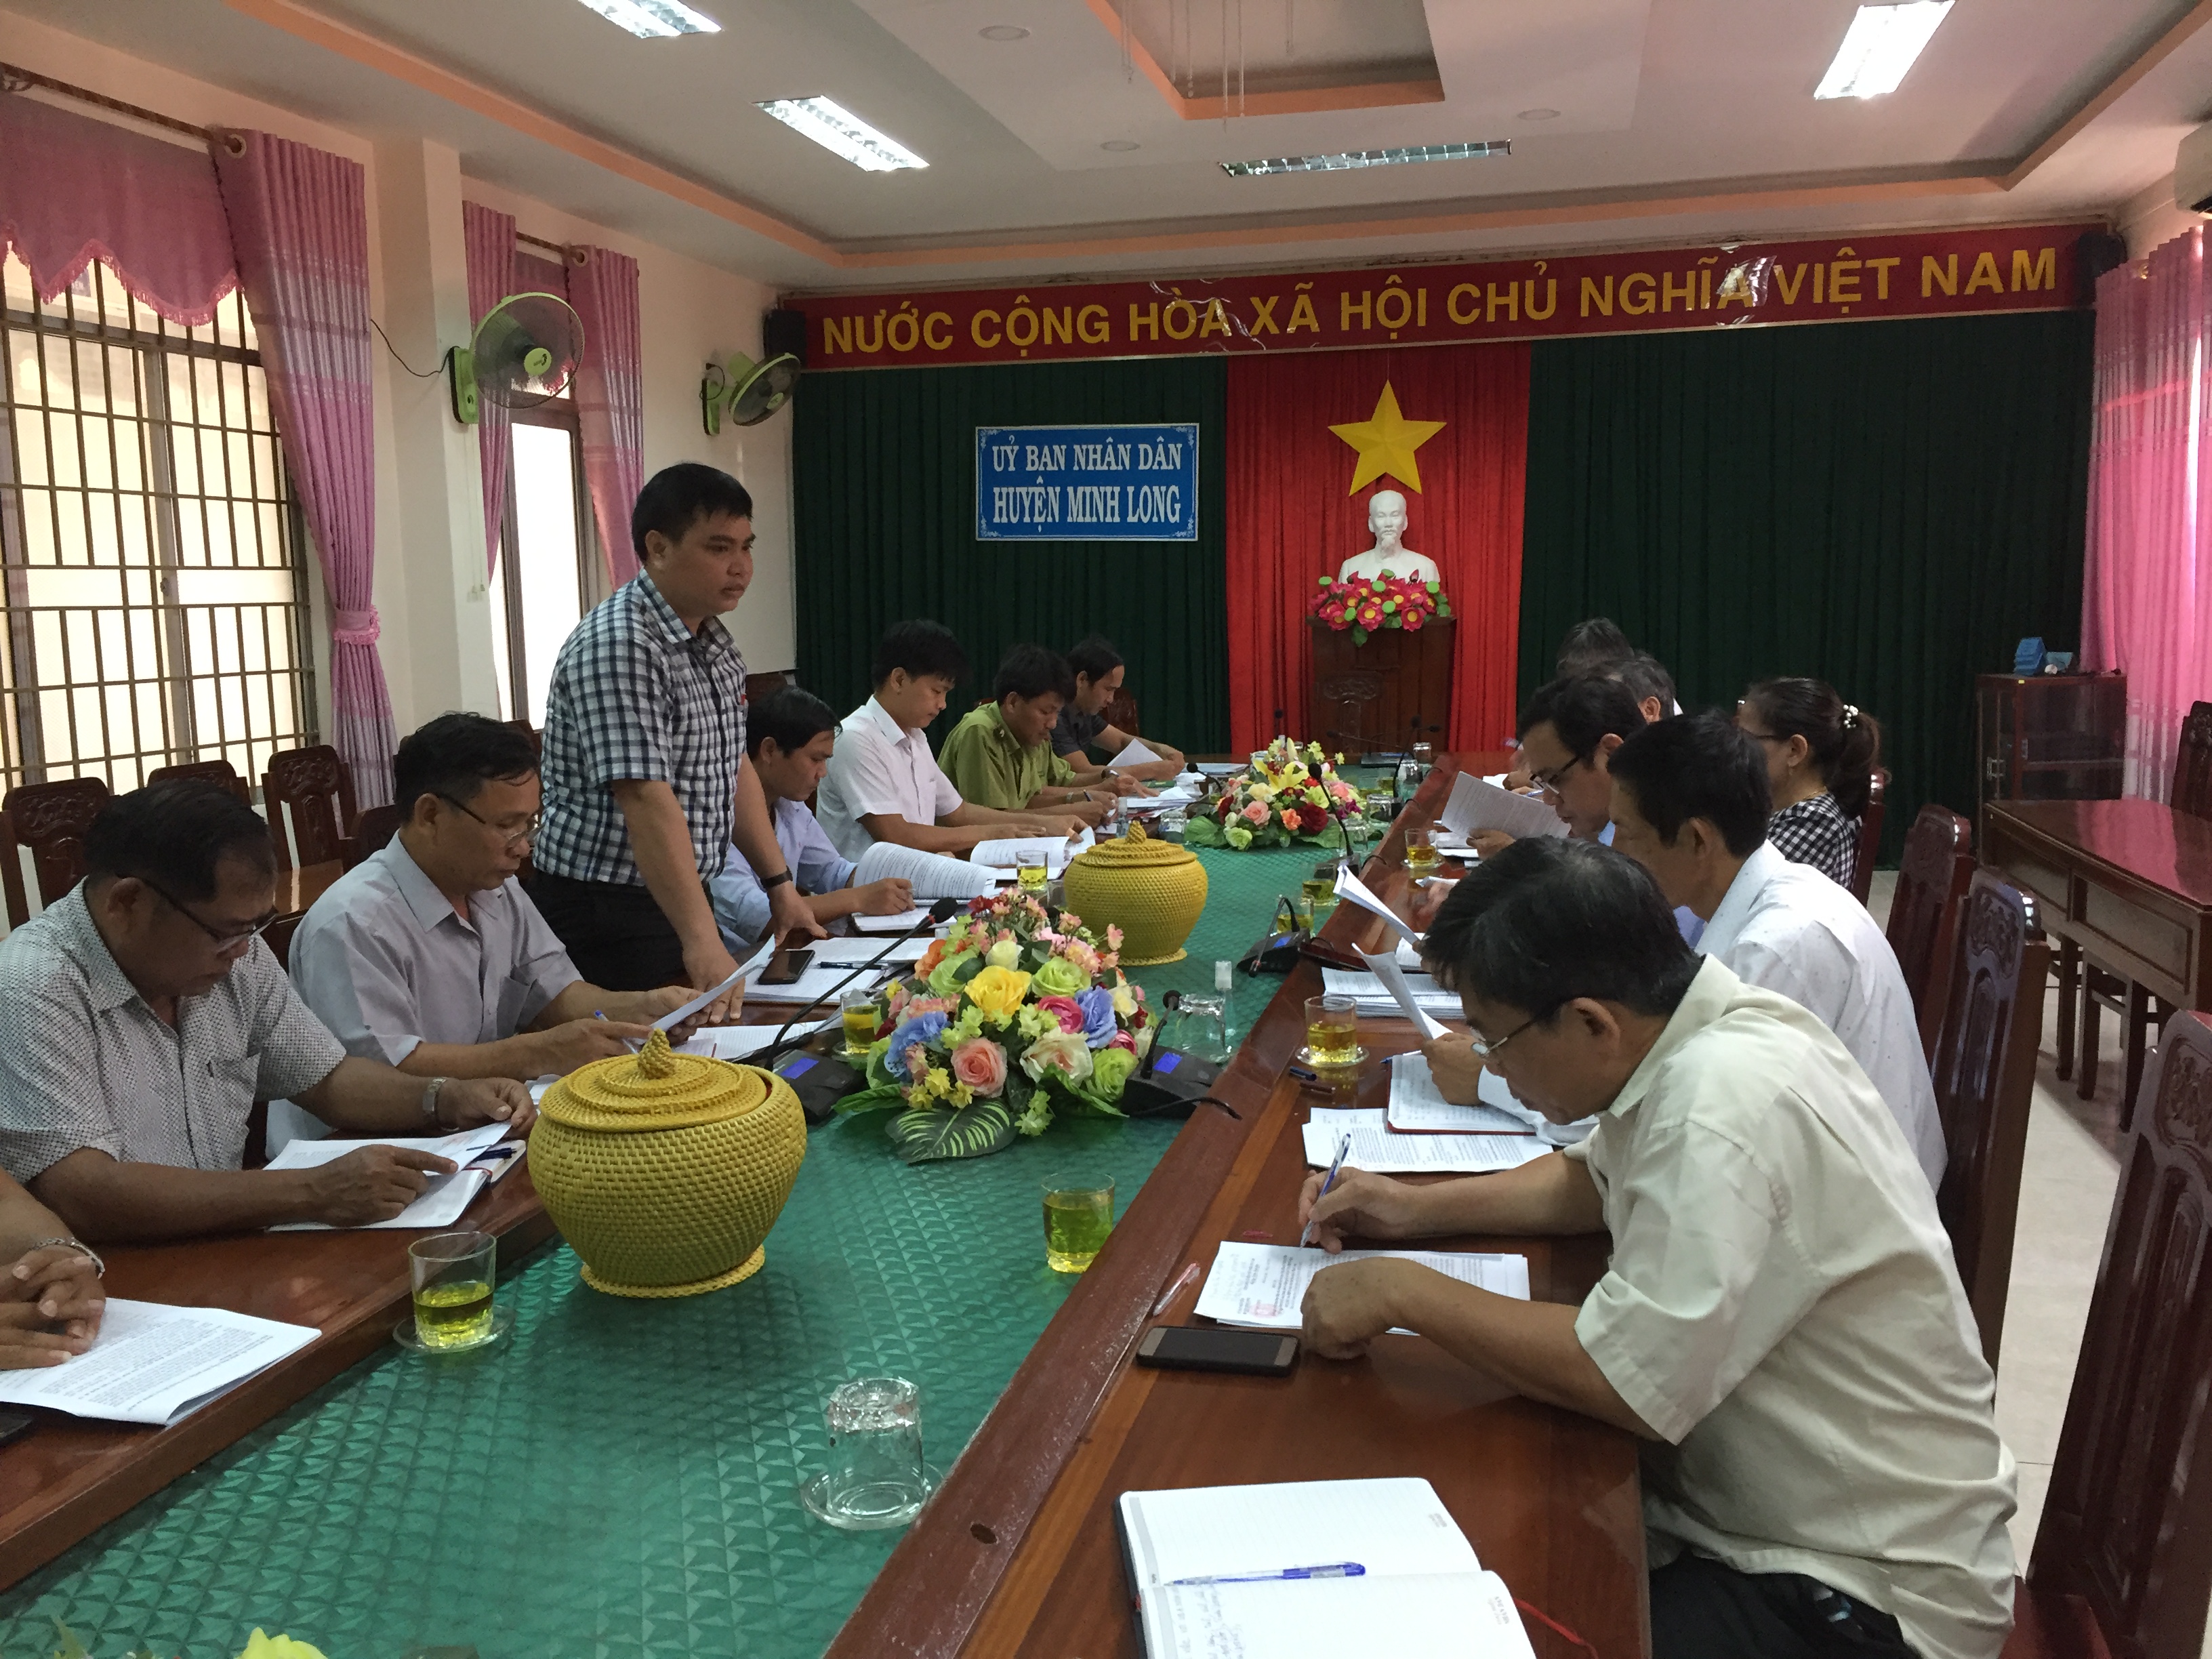 HĐND tỉnh Quảng Ngãi giám sát việc thực hiện Nghị định số 75/2015/NĐ-CP tại huyện Minh Long